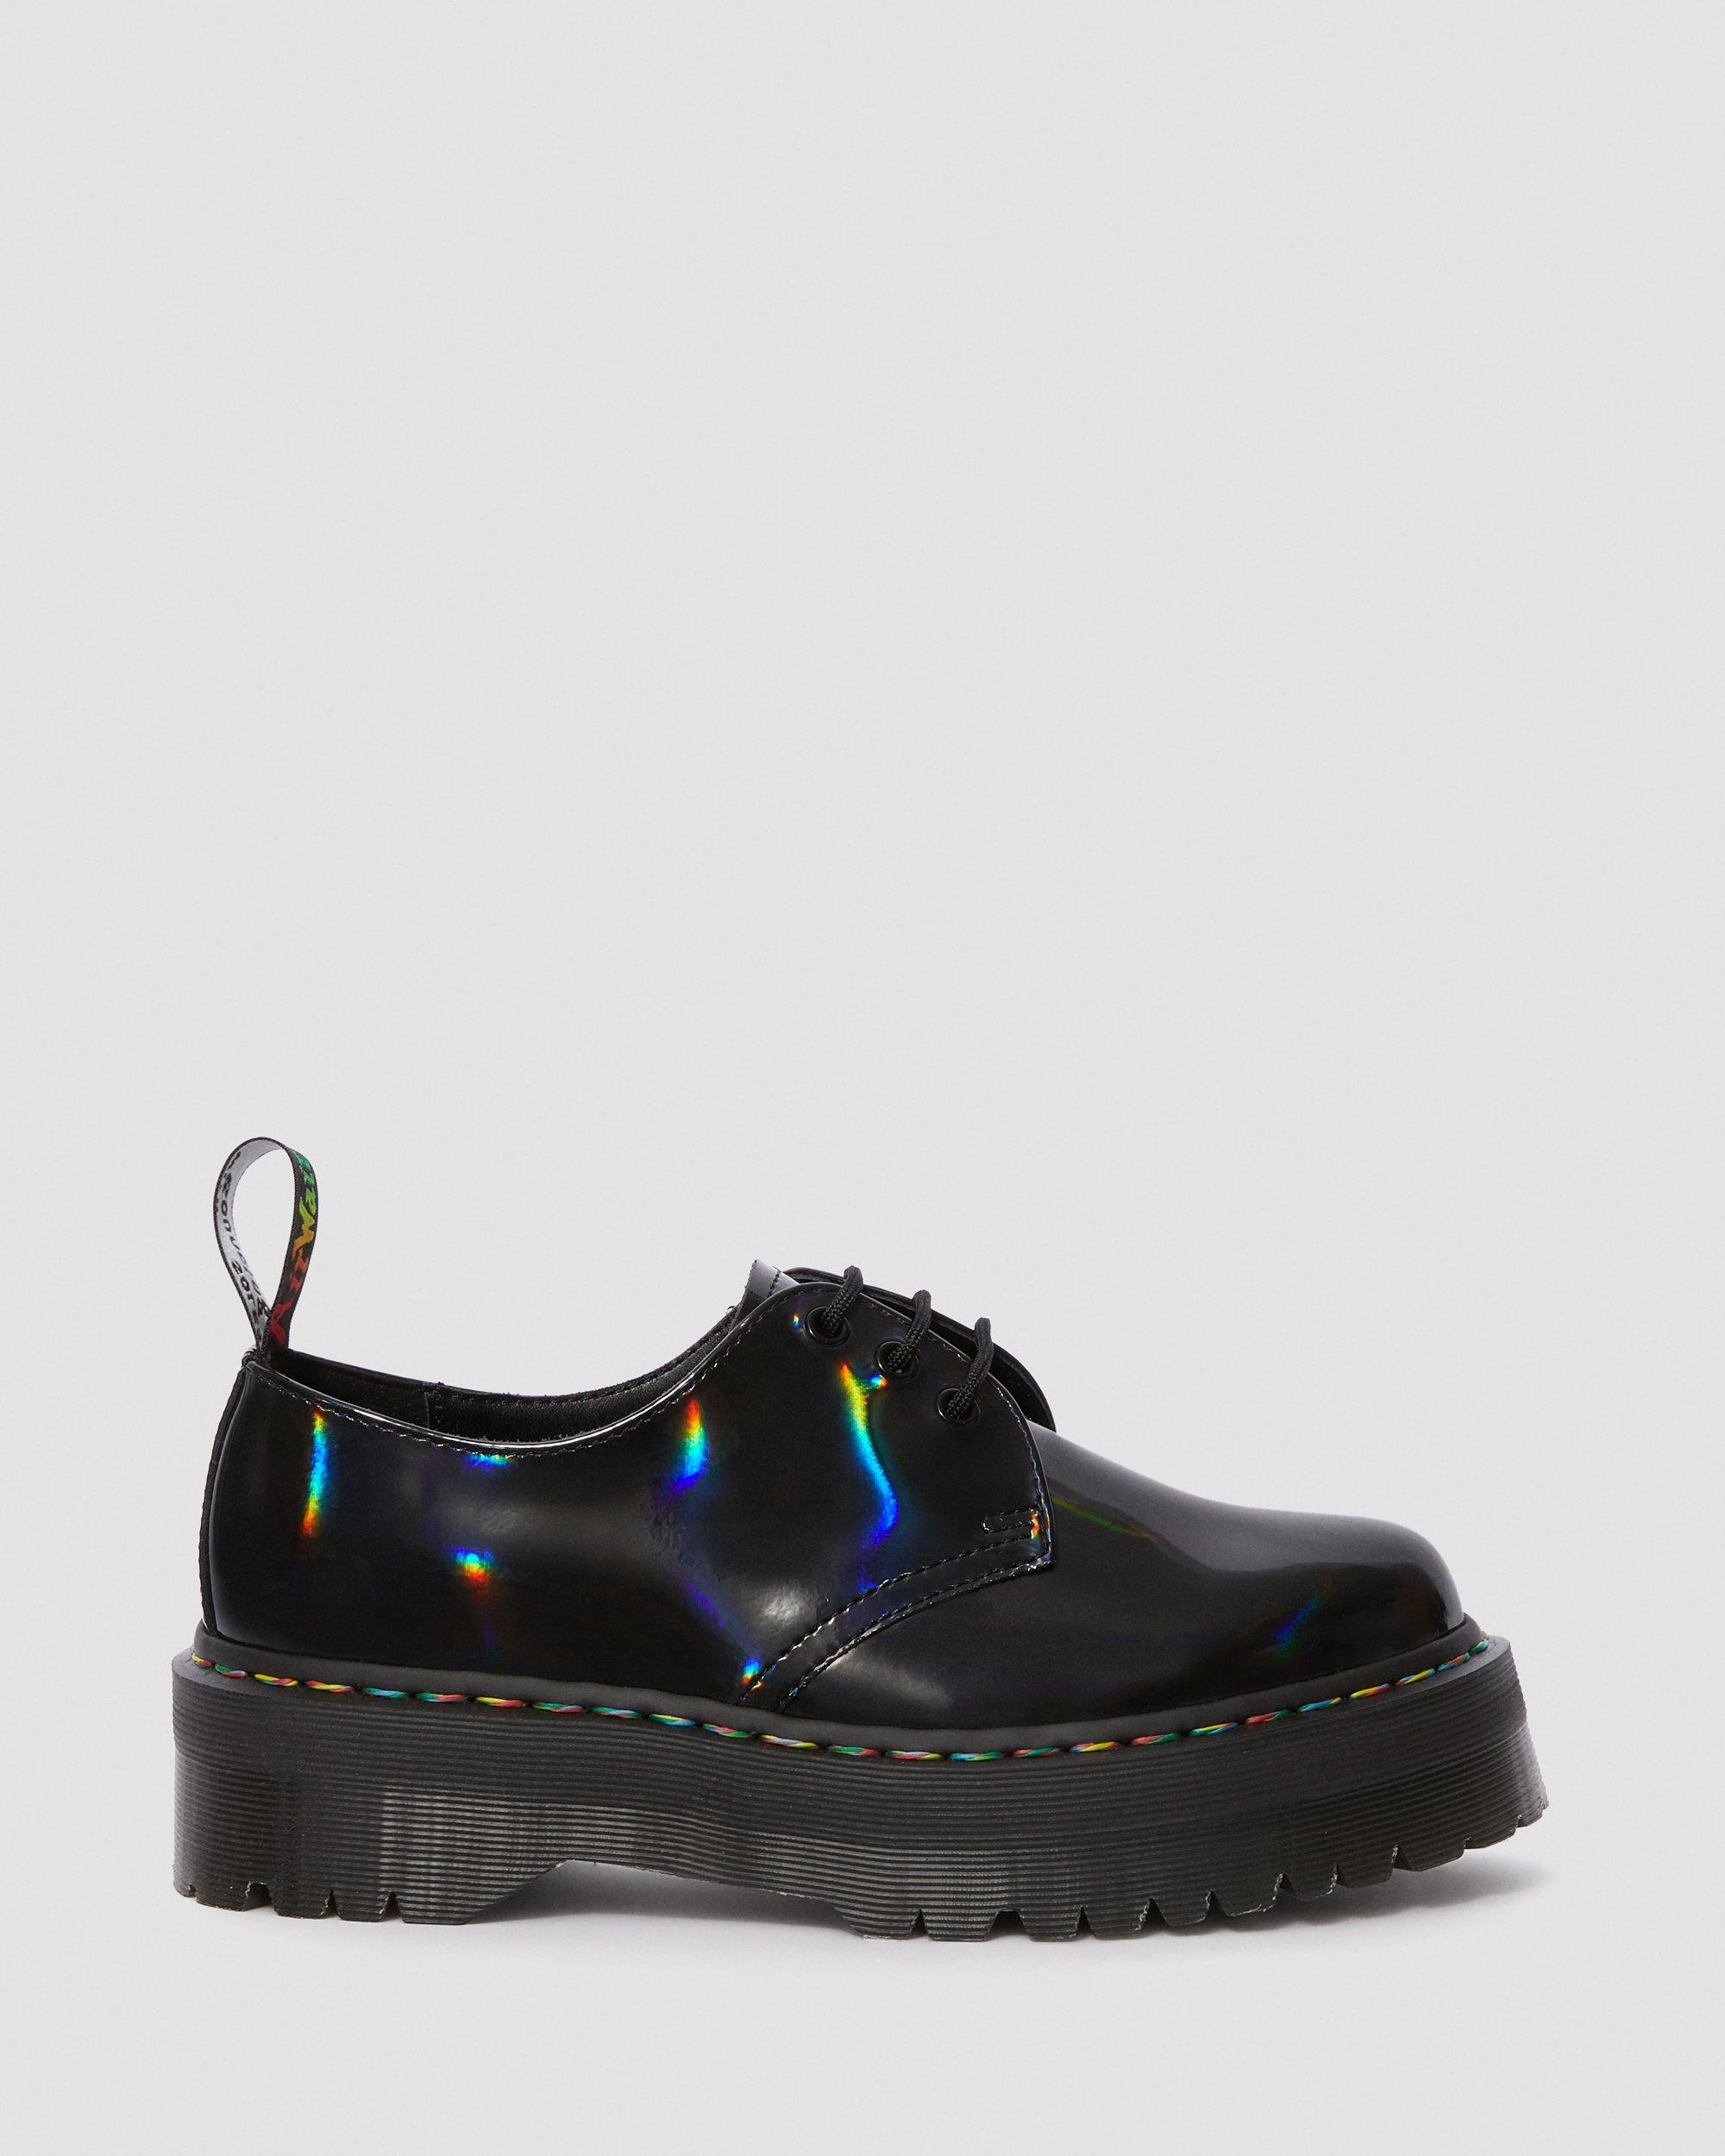 1461 Quad Rainbow Patent Platform Shoes in Black | Dr. Martens